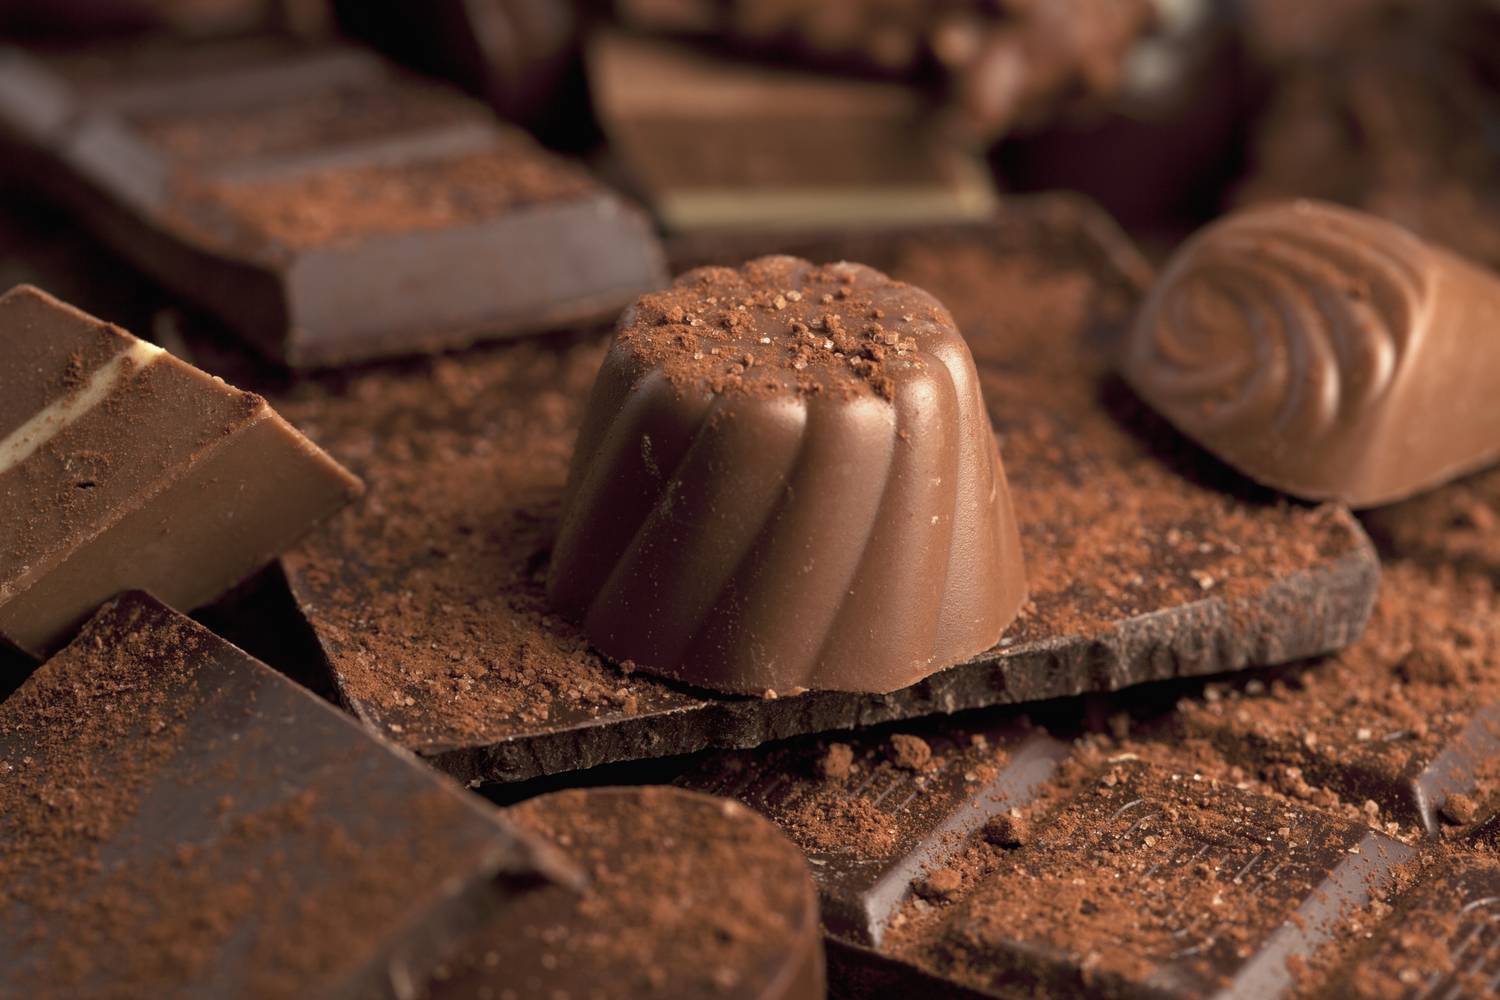 Ha folyton csokoládé után sóvárogsz, nemcsak azt jelentheti, hogy édesszájú vagy, hanem azt is, túl kevés a magnézium a szervezetedben. Ebben az esetben a csoki helyett válassz inkább olajos magvakat, gyümölcsöket és hüvelyeseket, amelyek rendkívül jó forrásai ennek az ásványi anyagnak.